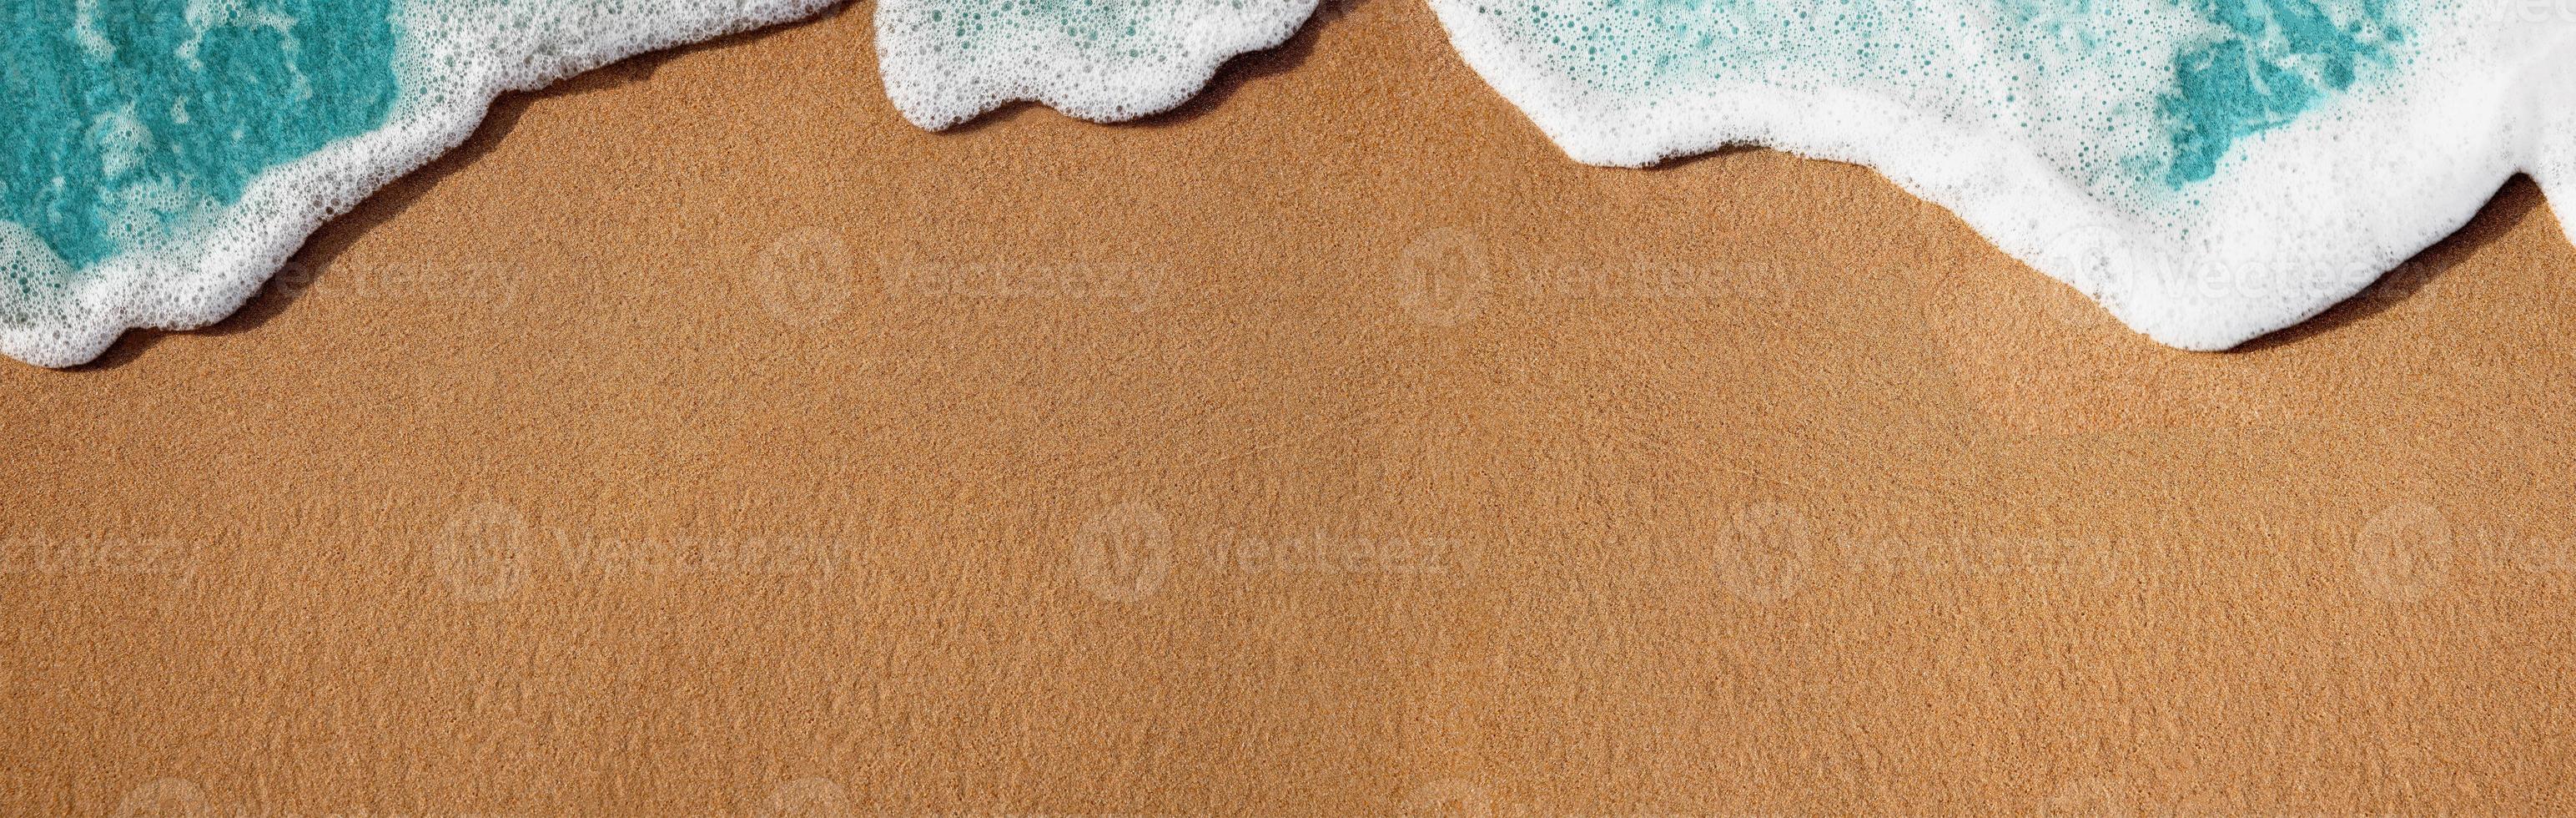 praia de areia vazia e onda azul suave em dia ensolarado de verão. fundo de textura natural. tamanho largo e longo para espaço de cópia. vista do topo. foco na areia foto